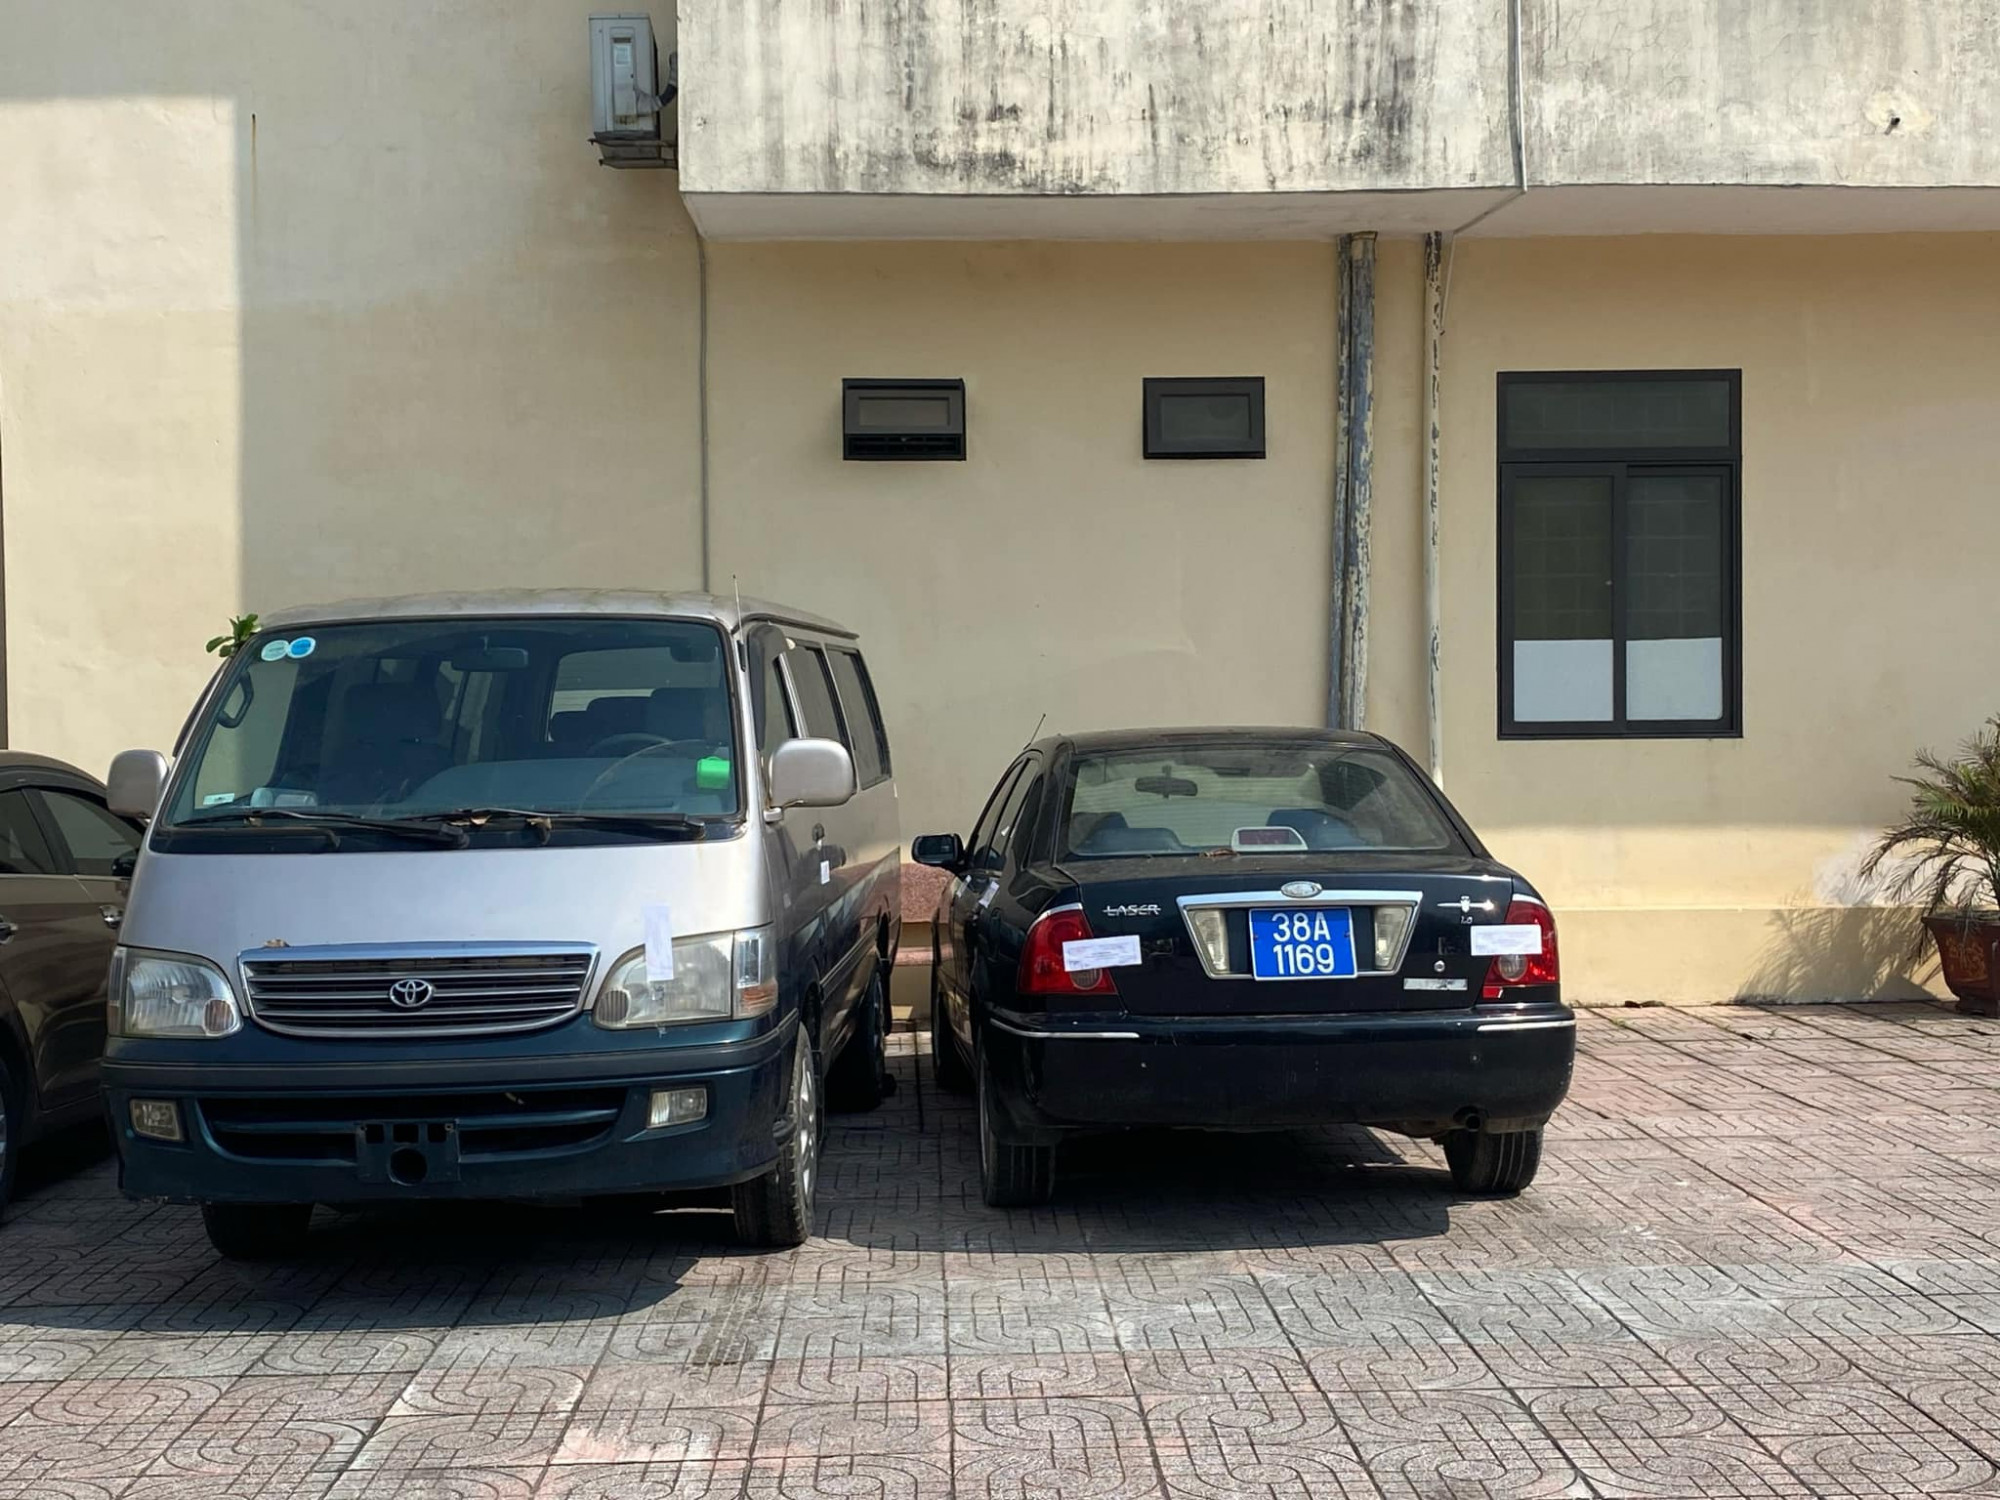 2 chiếc xe ô tô cùng mang một biển xanh giống nhau bị tạm giữ - Ảnh: Công an cung cấp